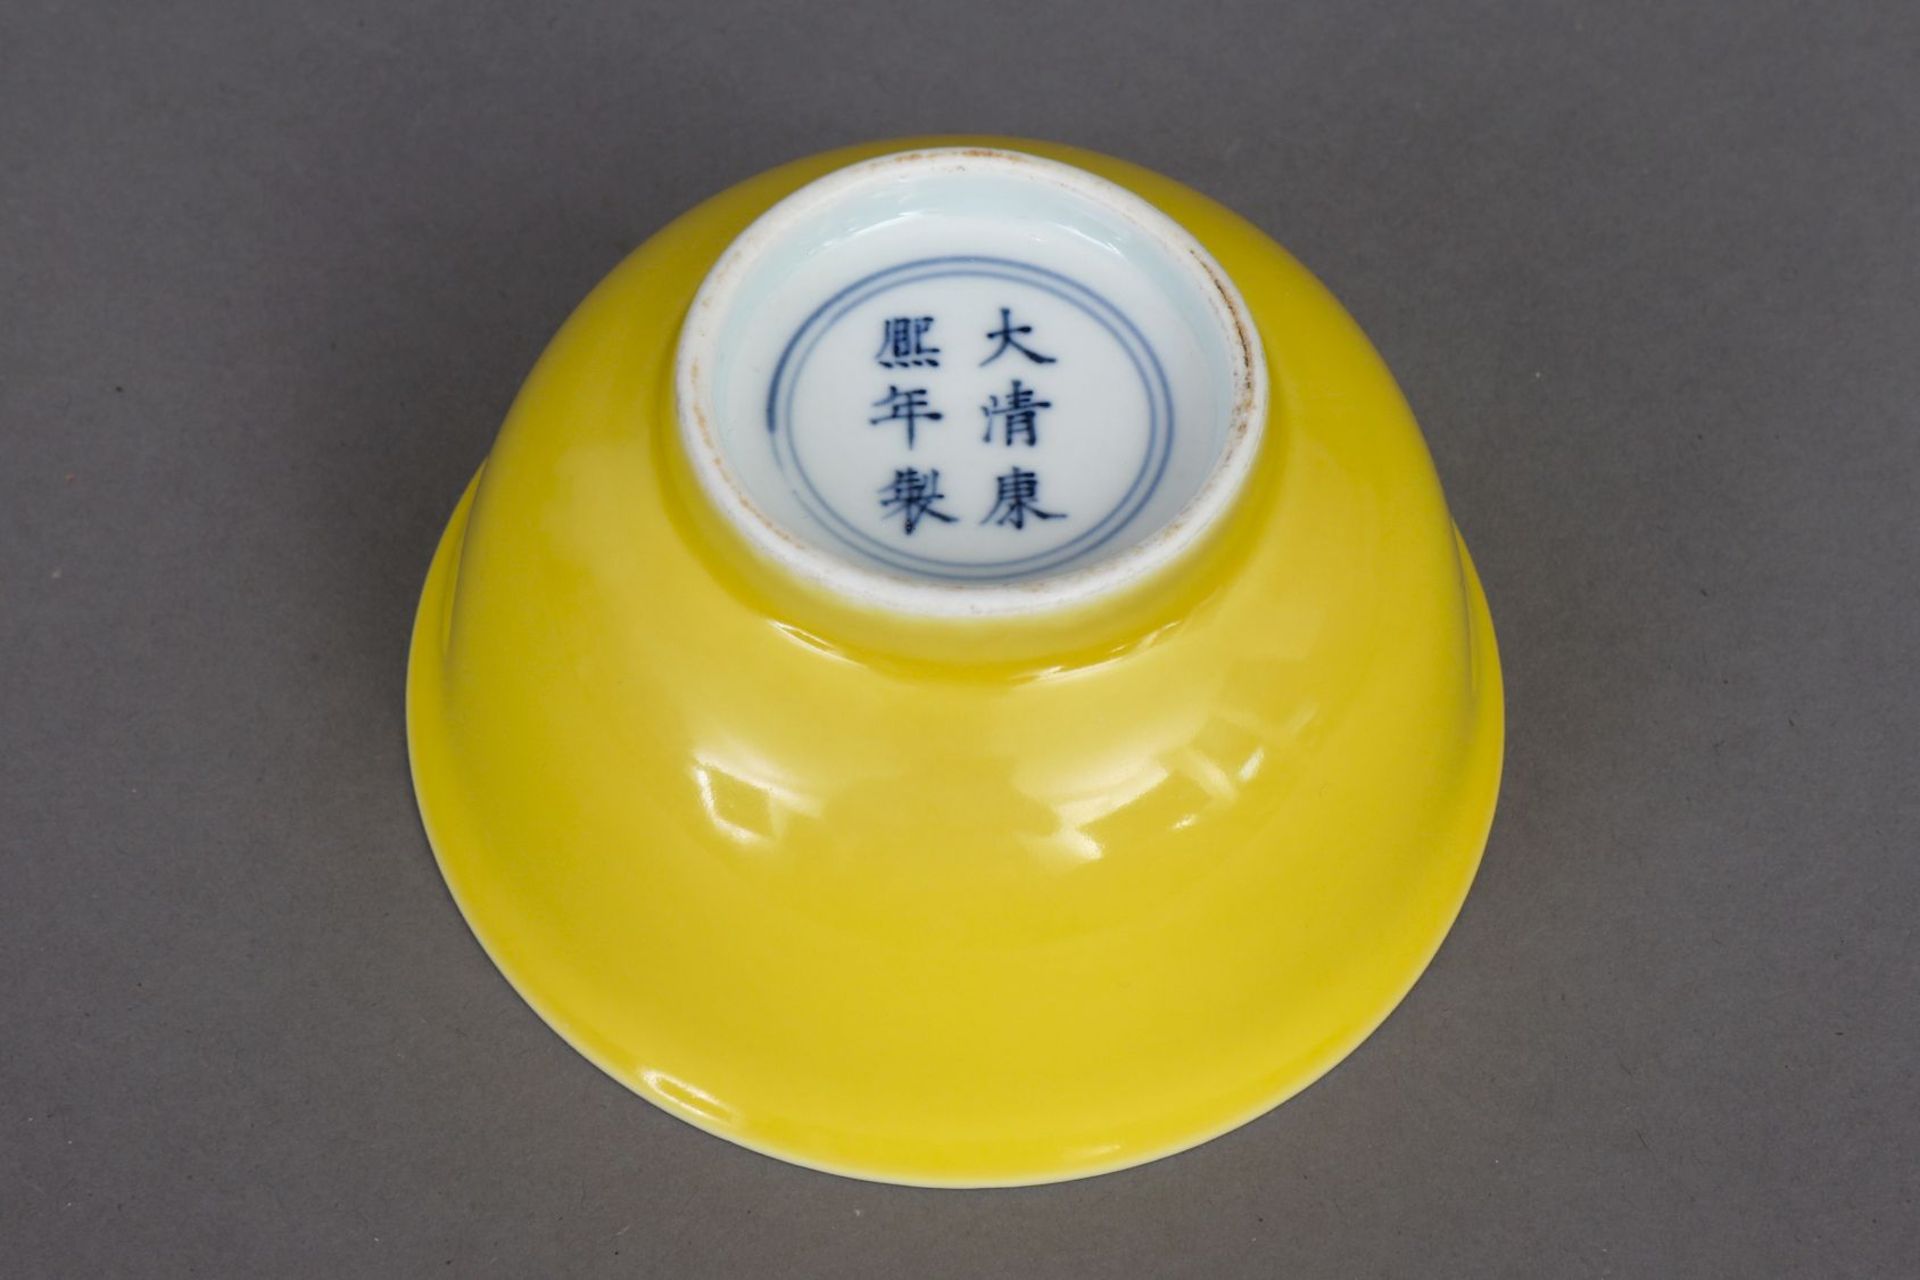 Kleine chinesische Porzellanschale - Image 2 of 2